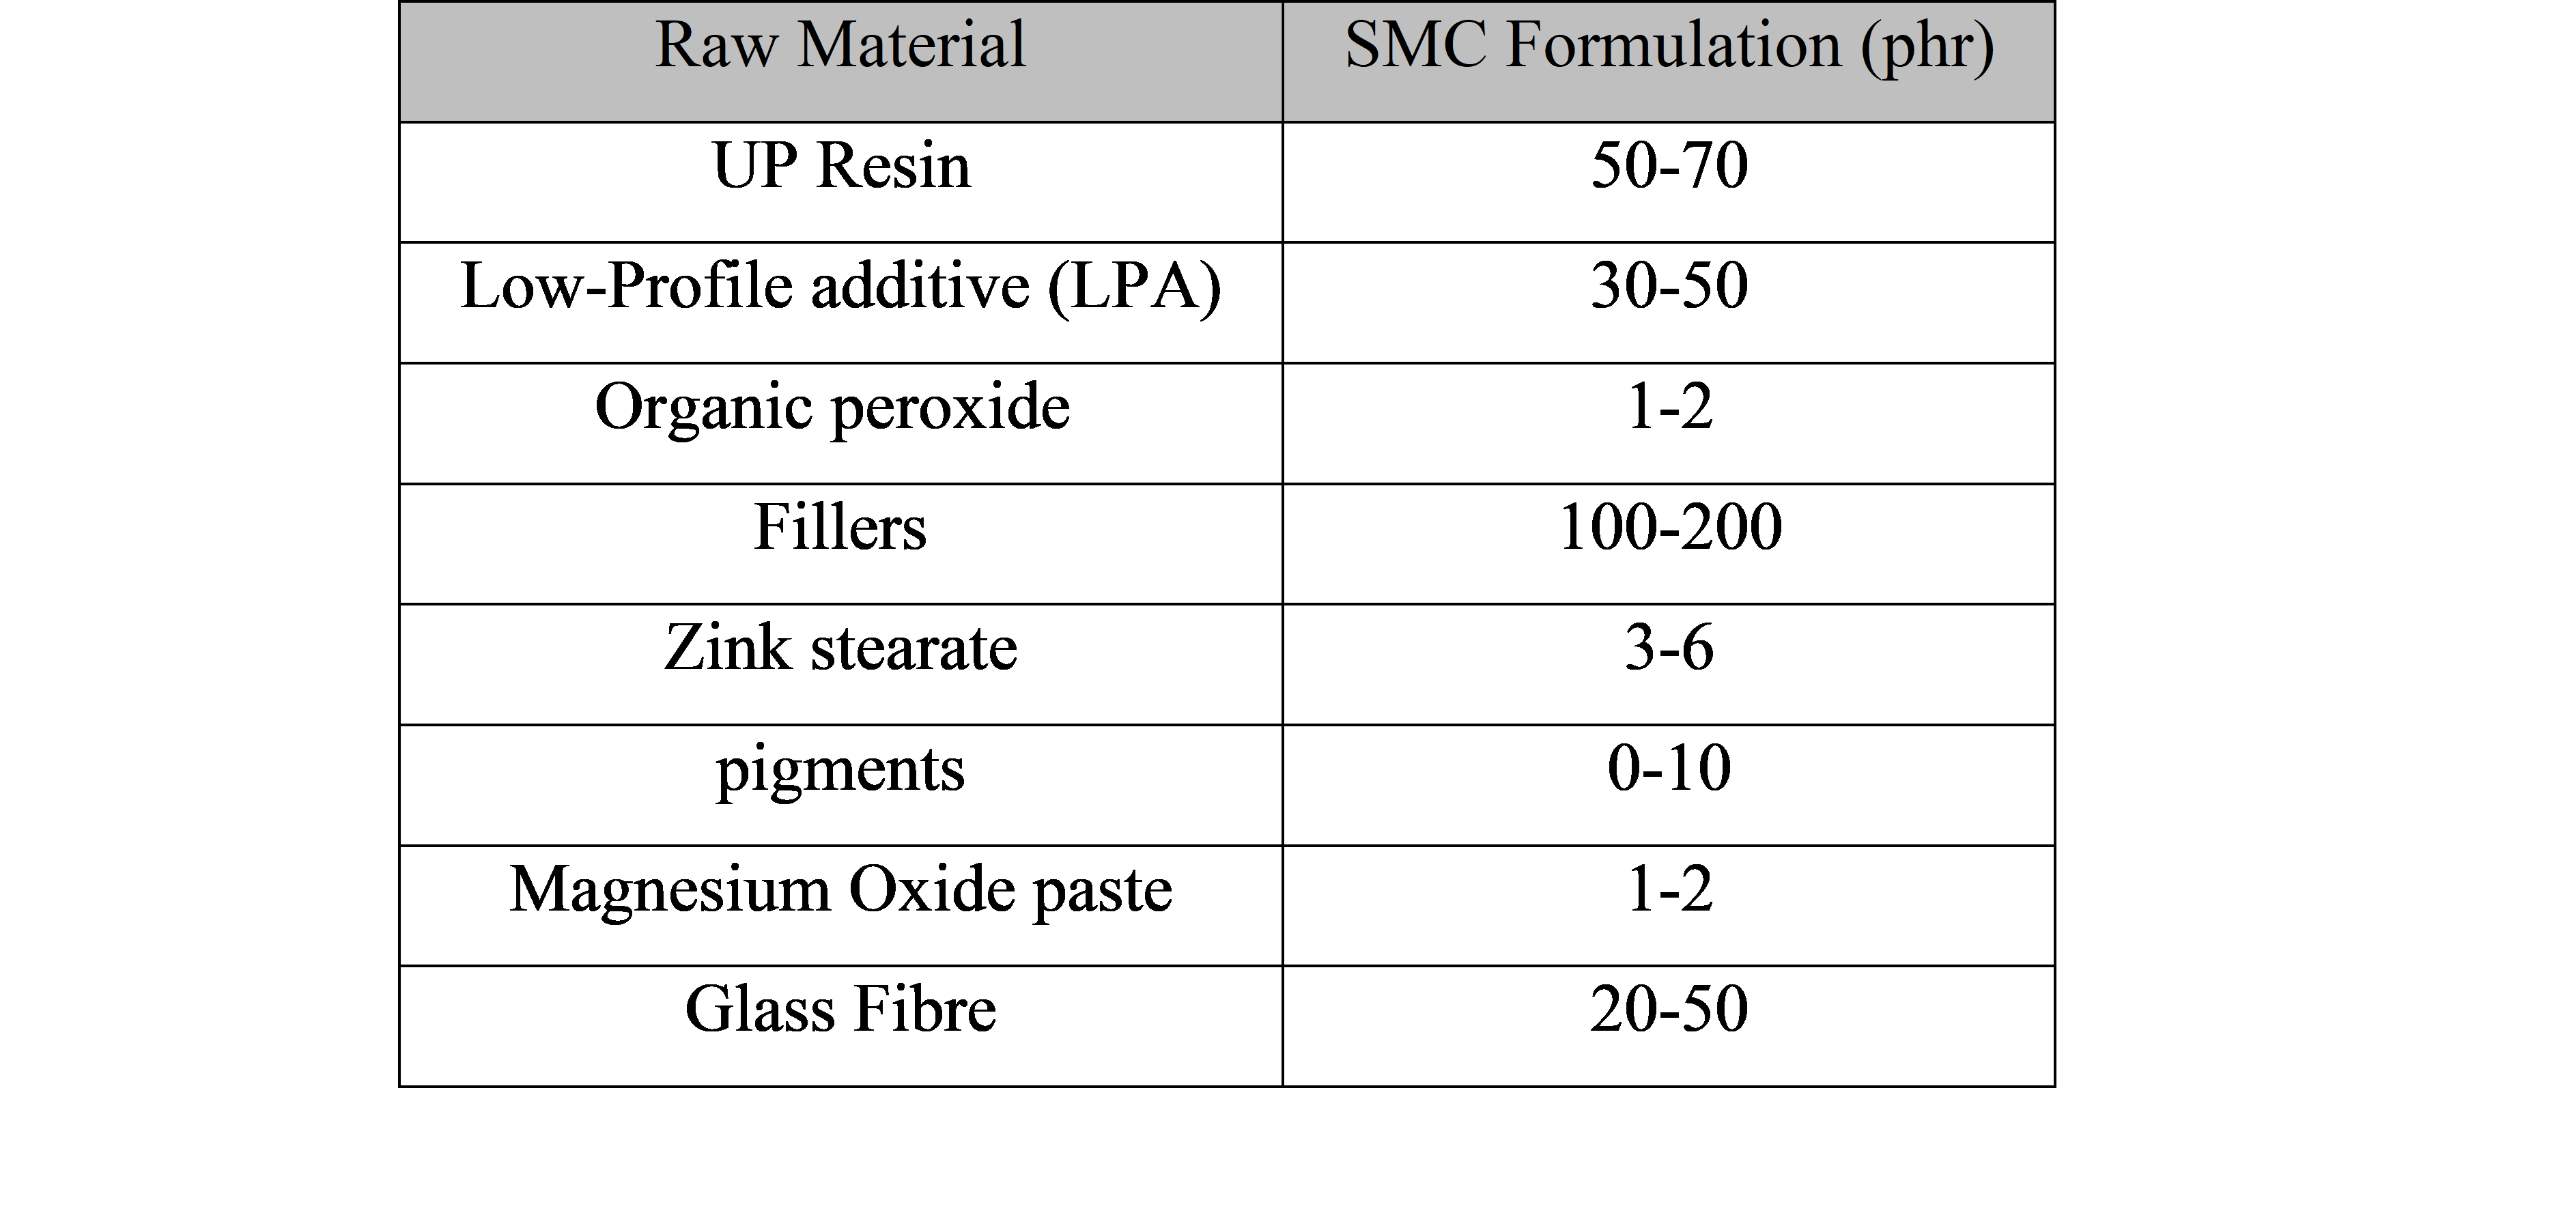 SMC Formulation